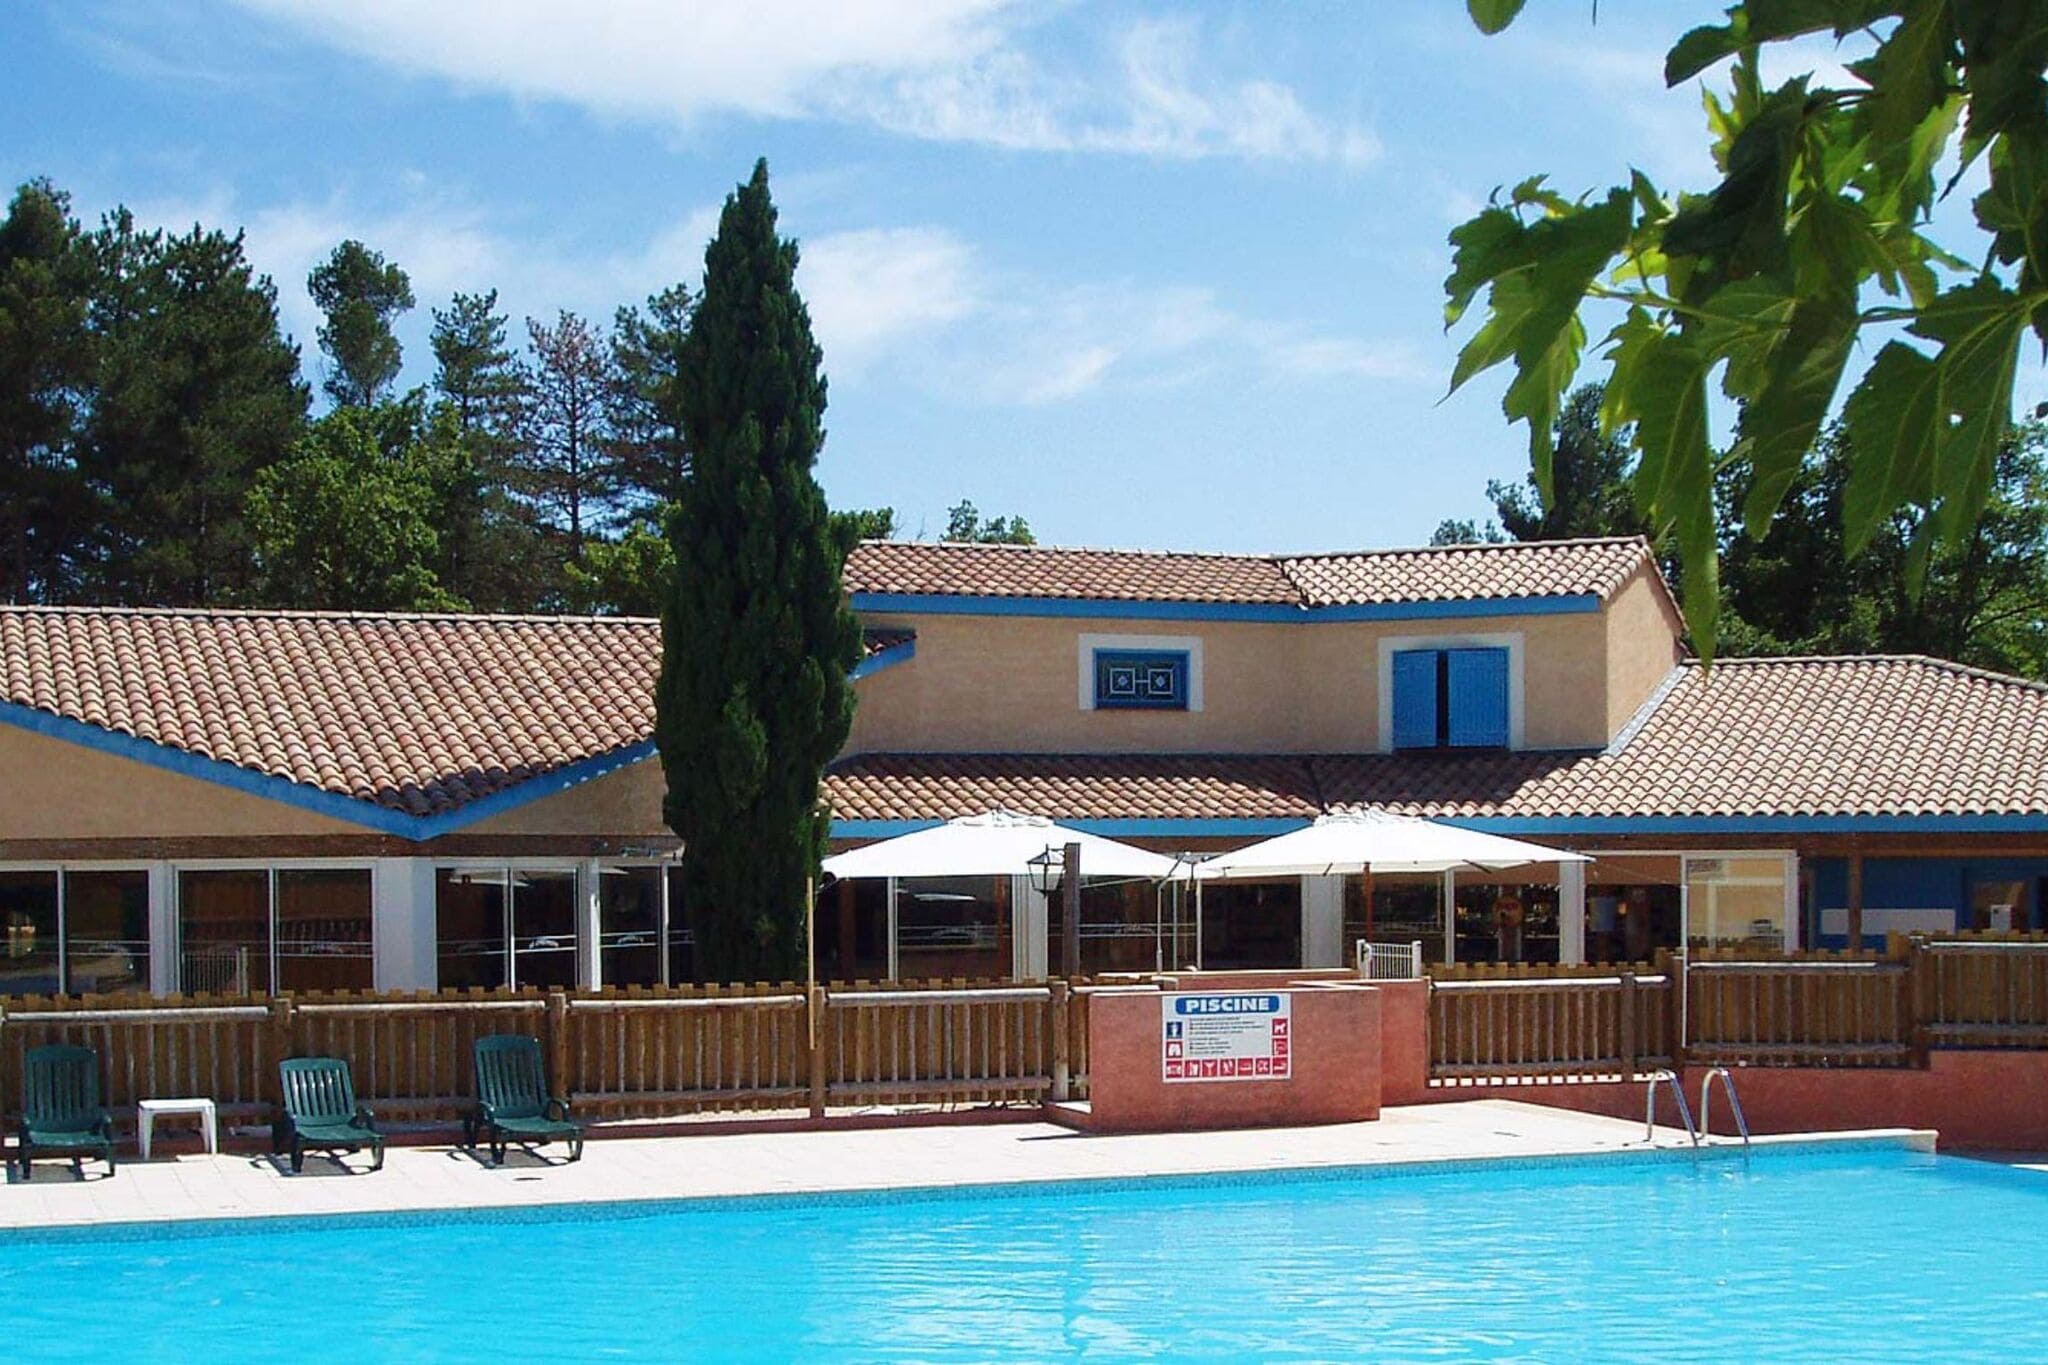 Maisonnette de style provençal avec grande piscine commune